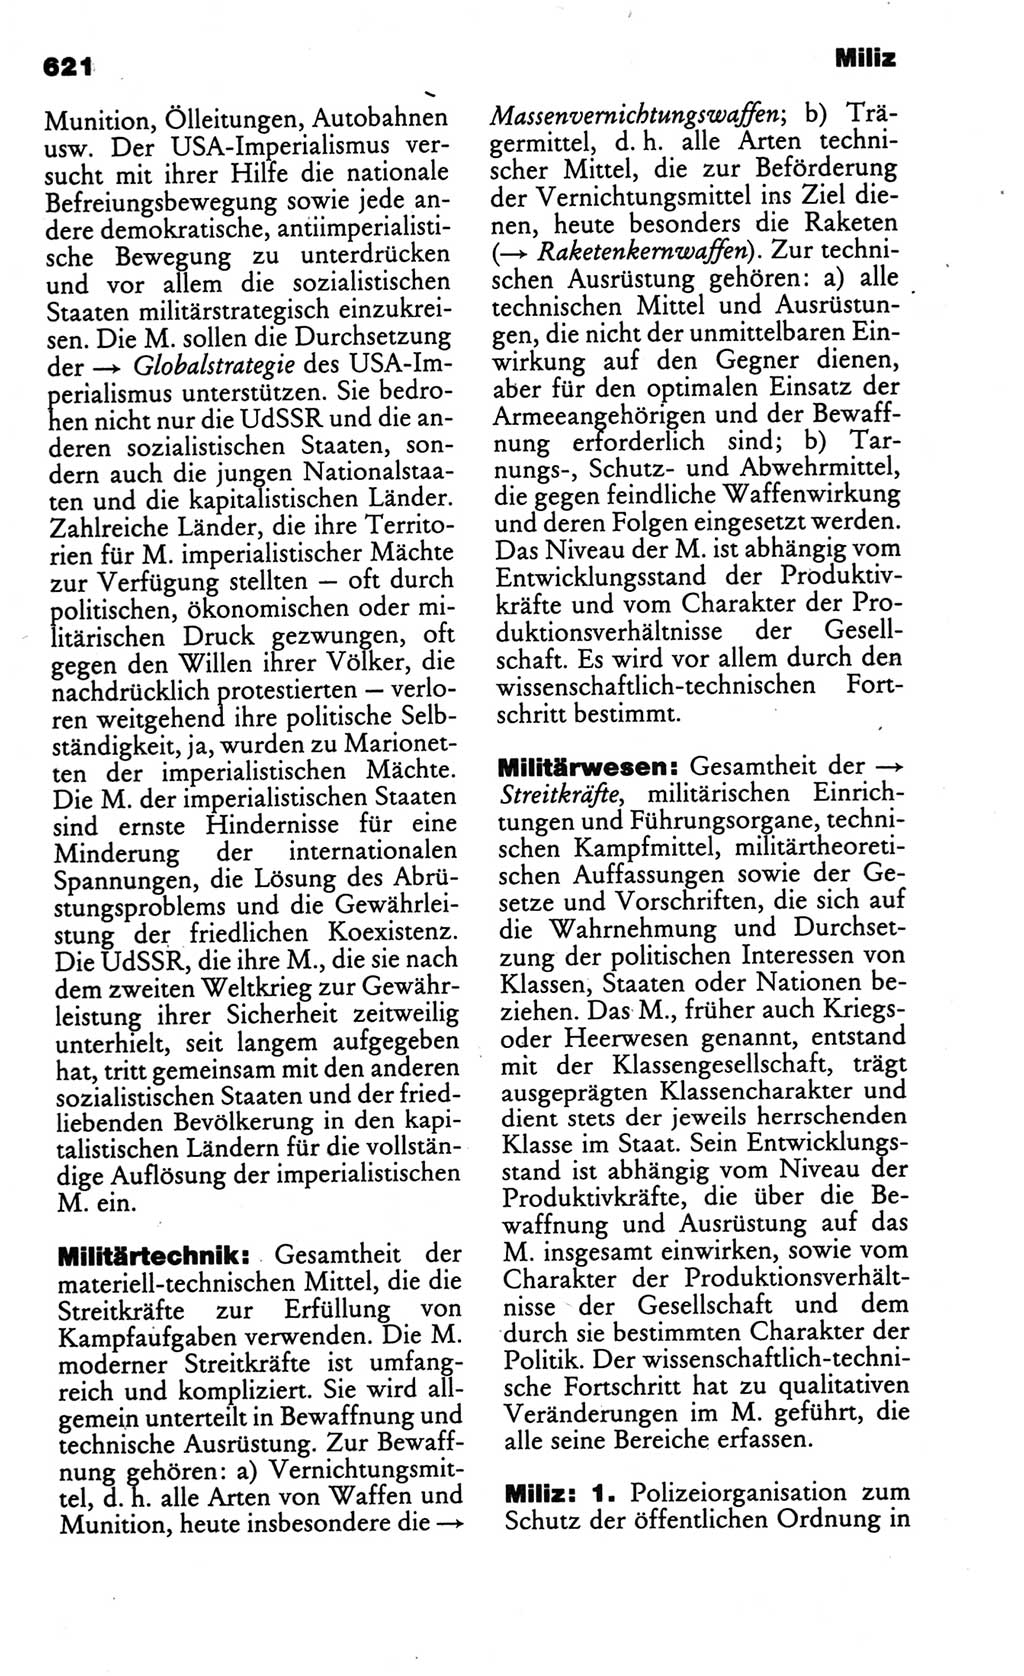 Kleines politisches Wörterbuch [Deutsche Demokratische Republik (DDR)] 1986, Seite 621 (Kl. pol. Wb. DDR 1986, S. 621)